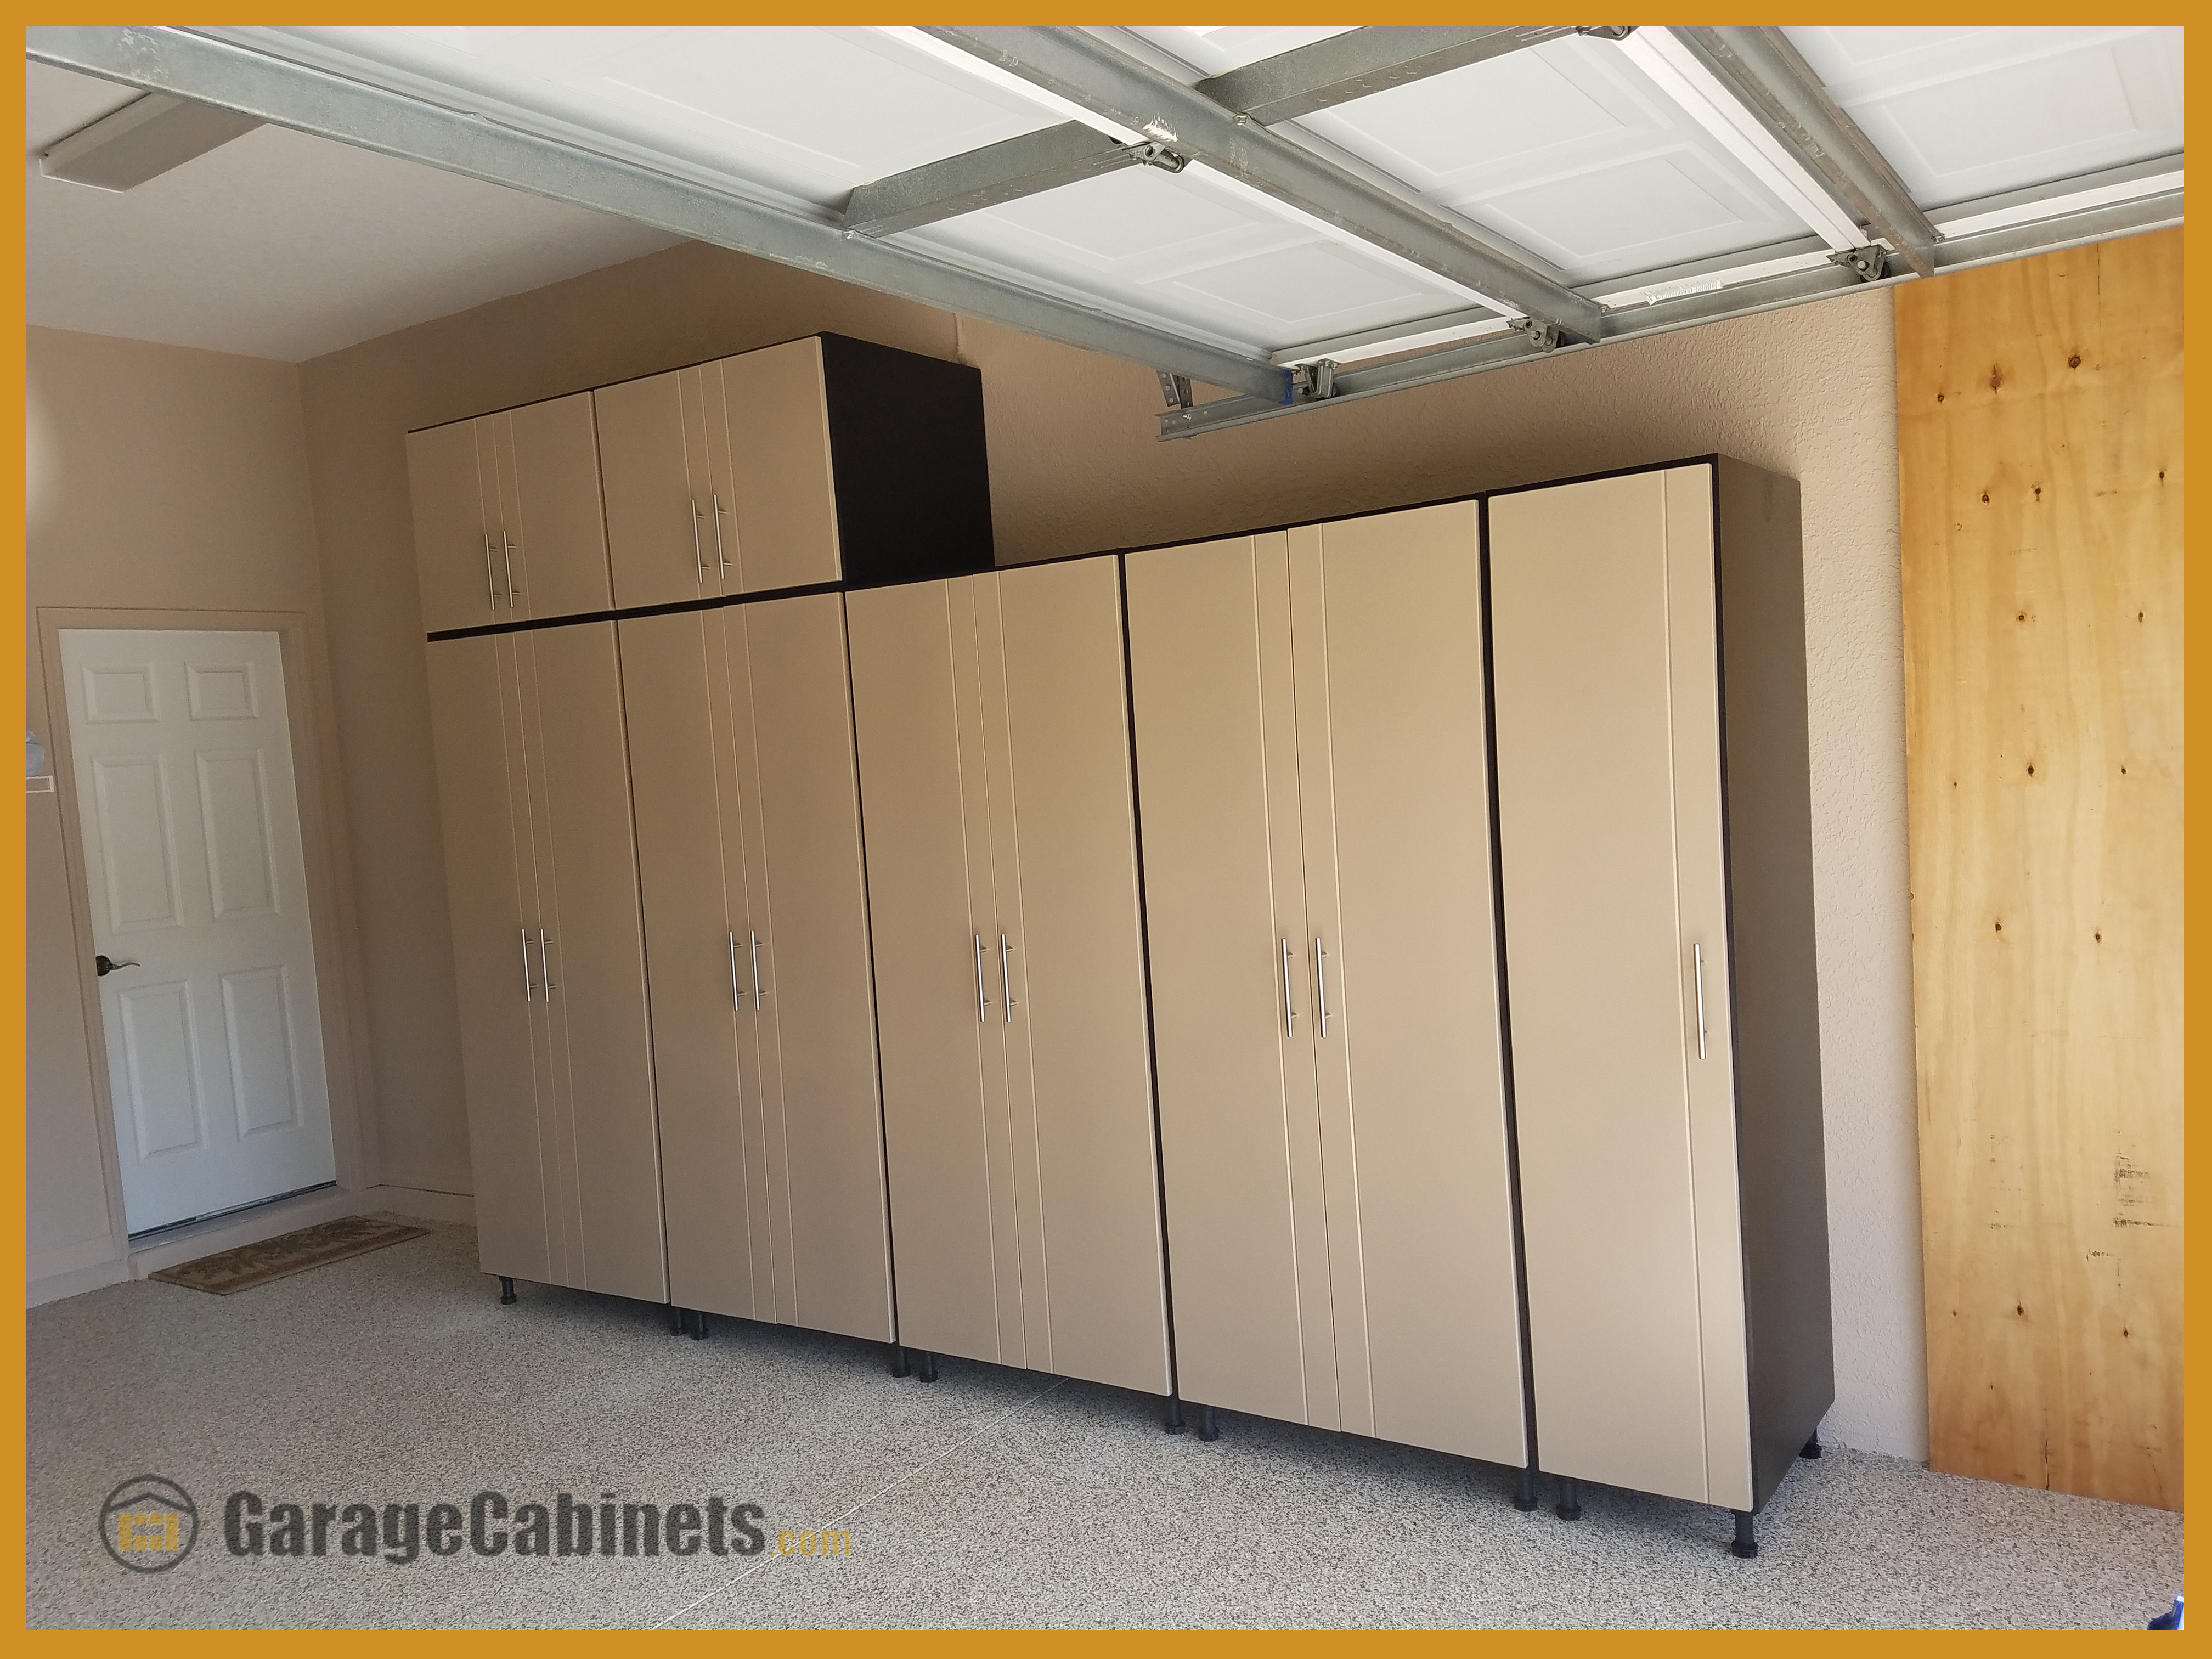 Work Space Garage Cabinets organisiert Garagenbilder